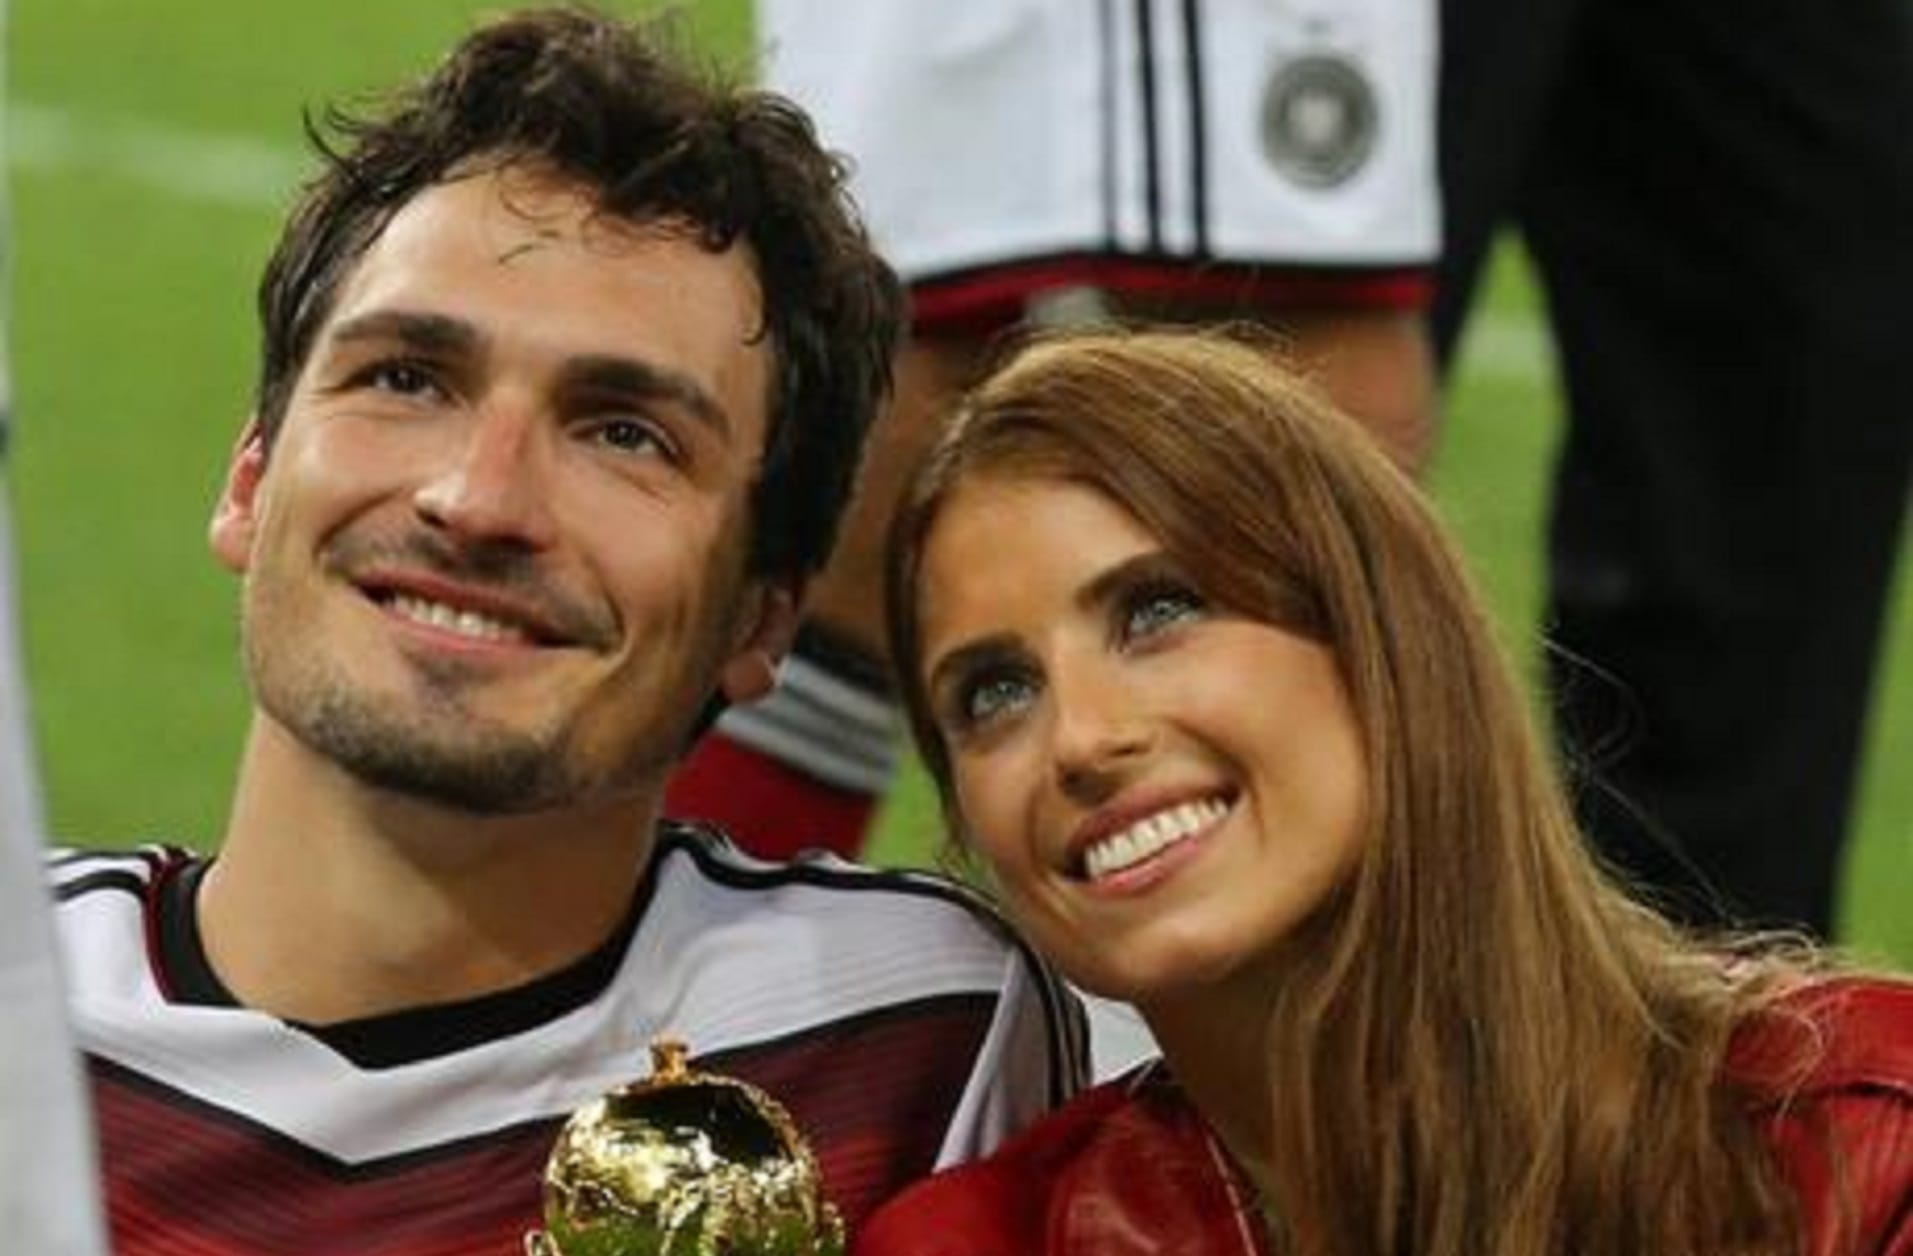 2014: Kurz darauf sieht man Mats Hummels und Cathy zusammen, wie sie glücklich über den Sieg und mit dem WM-Pokal in der Hand für ein Foto posierend lächeln.